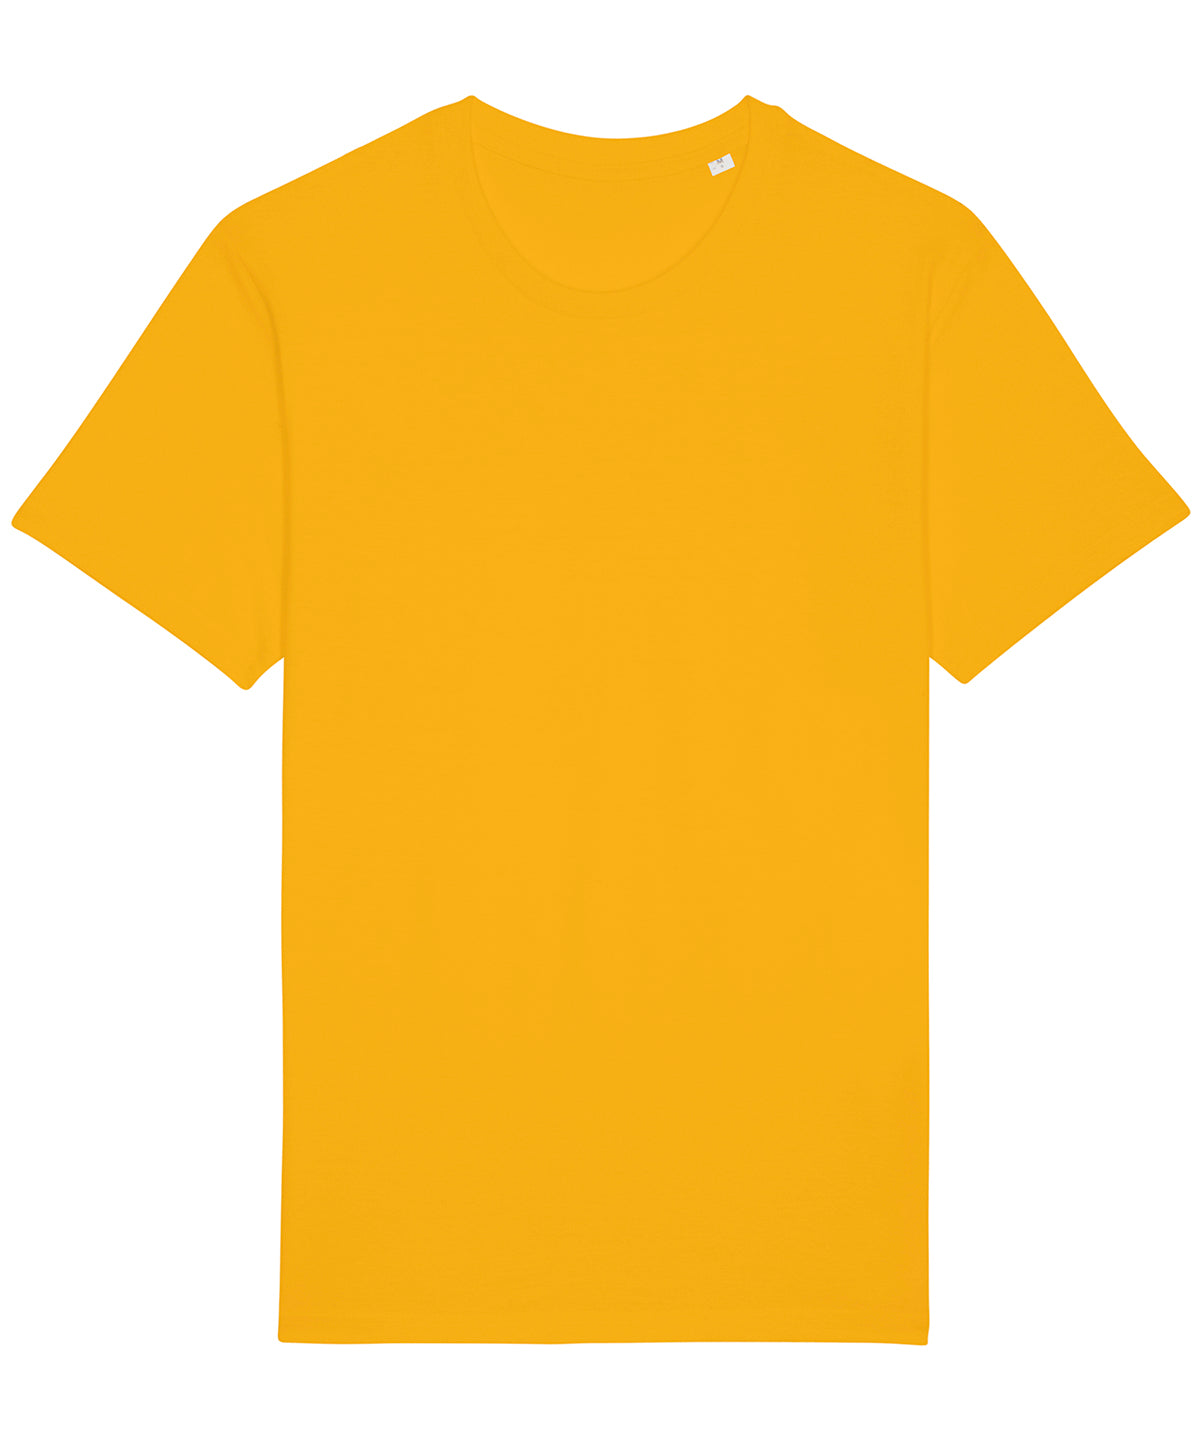 Stanley/Stella Rocker The Essential Unisex T-Shirt  Spectra Yellow